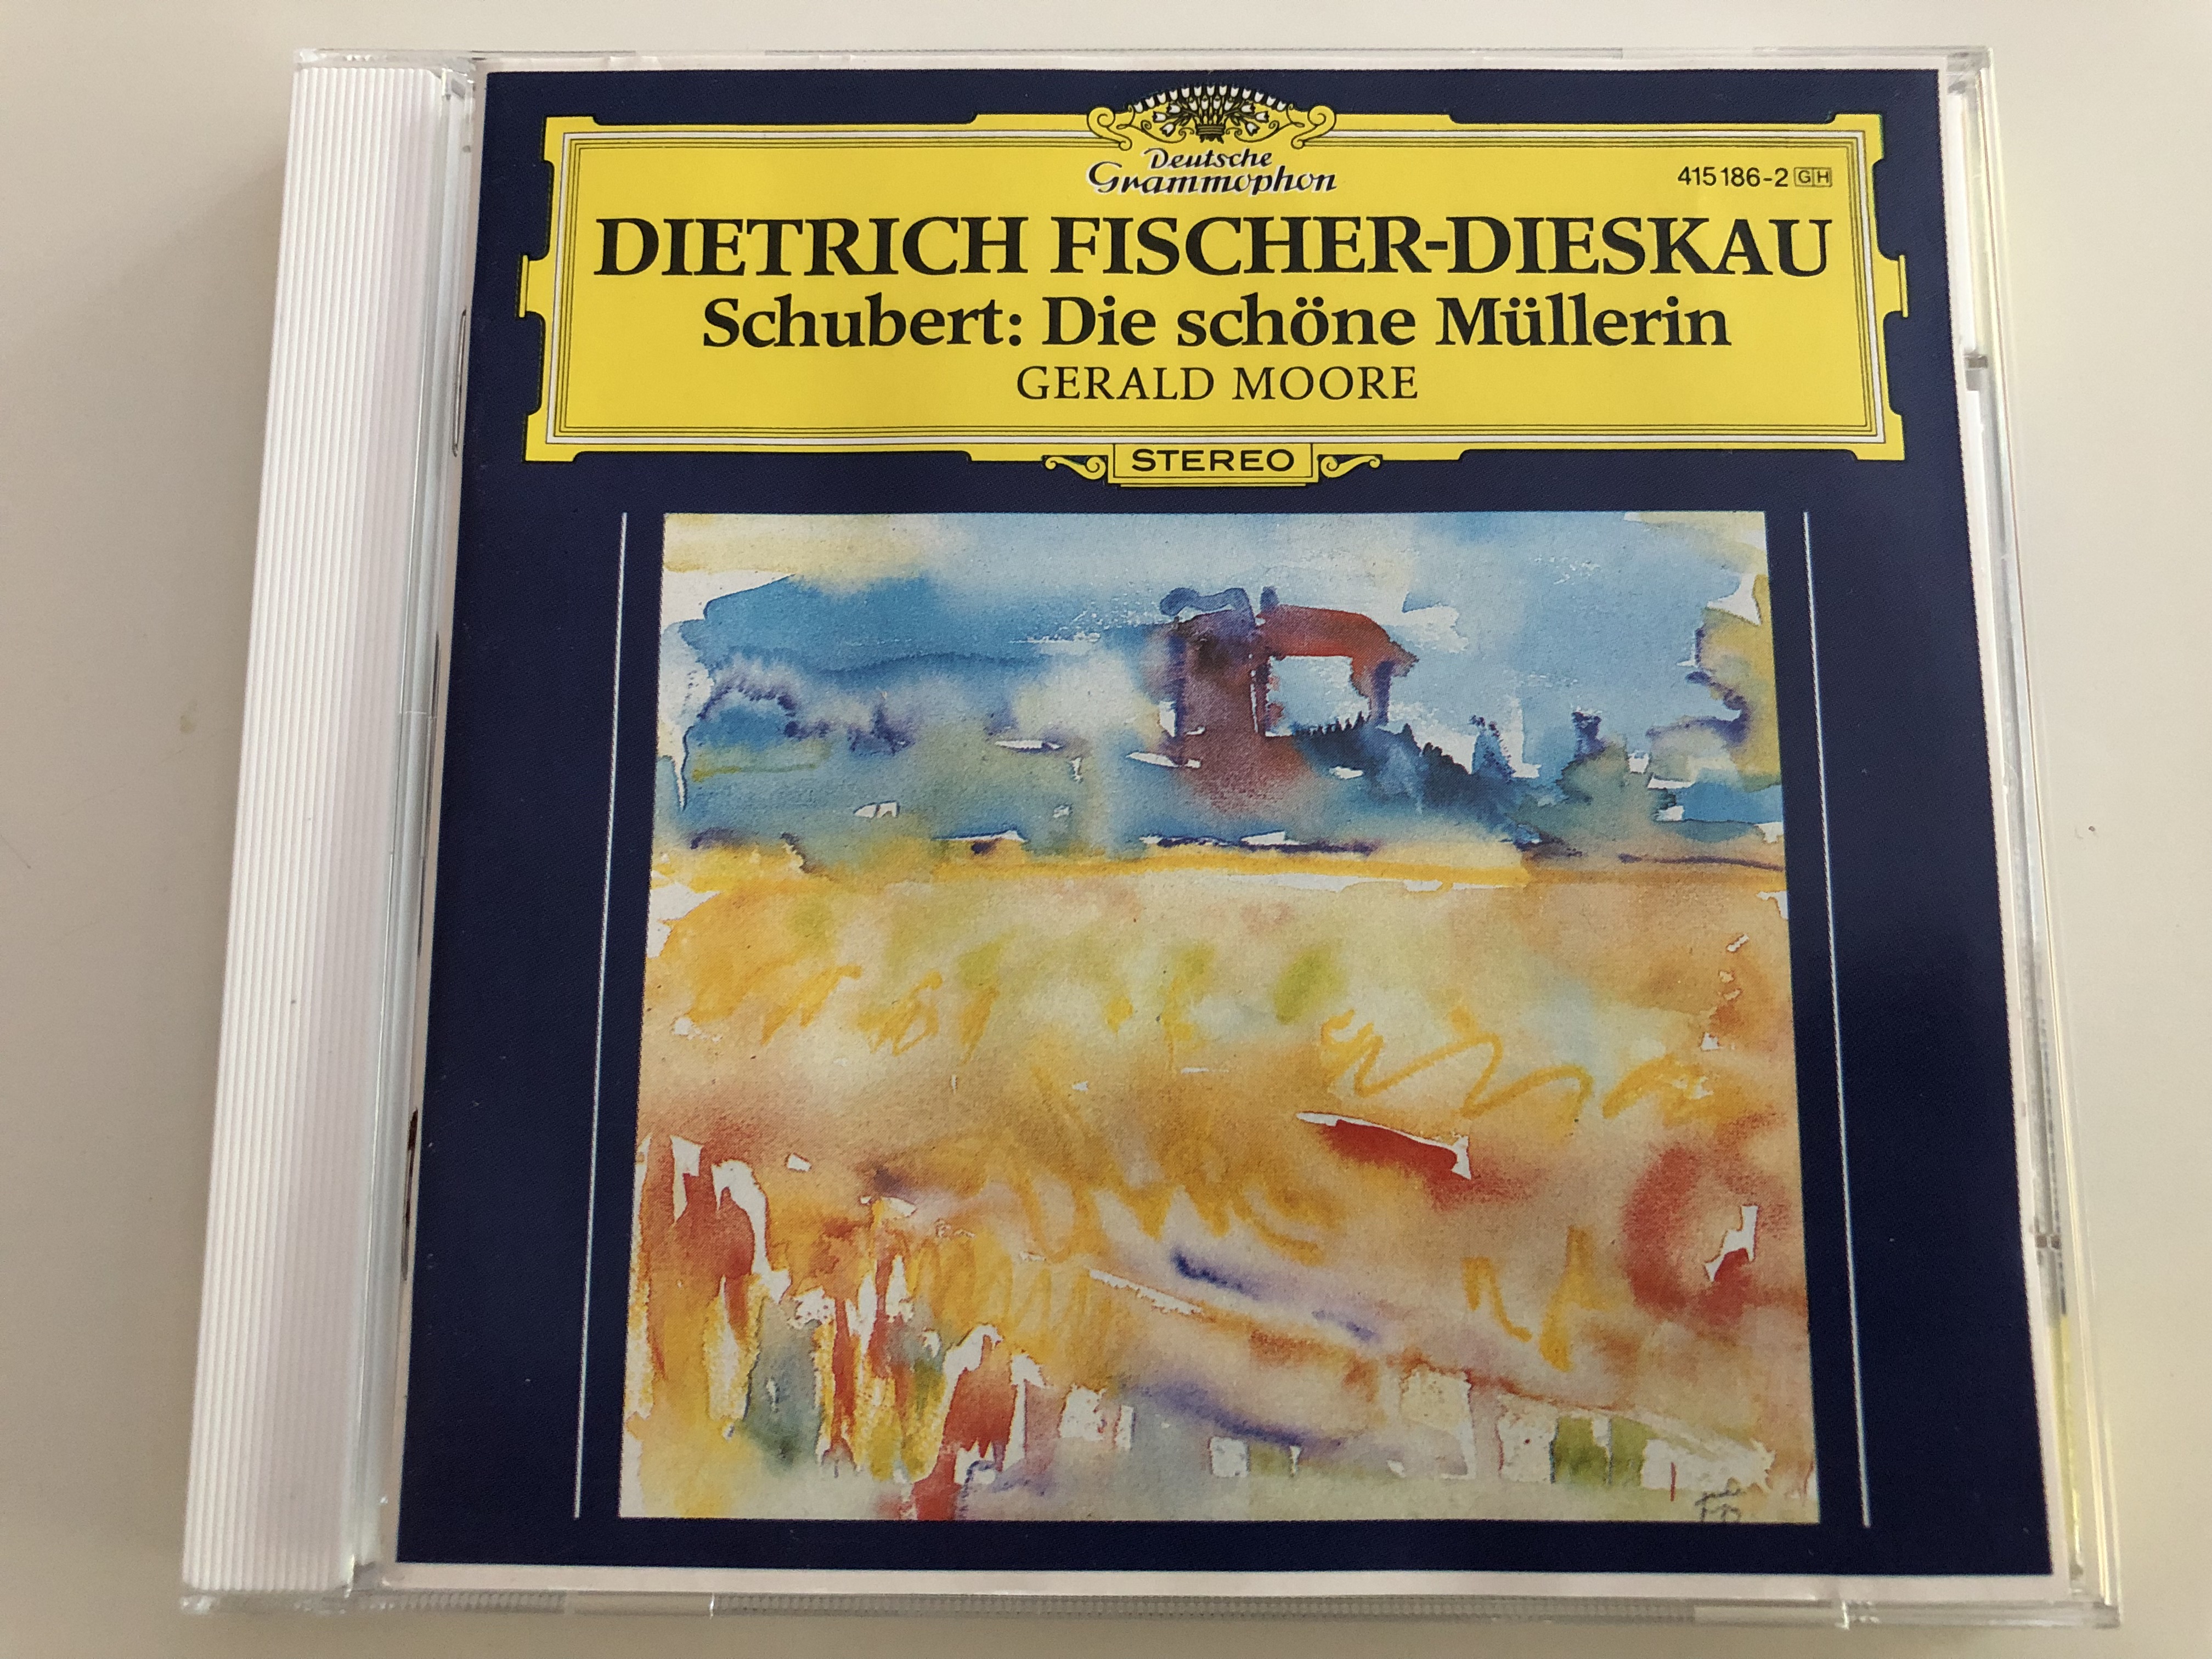 dietrich-fischer-dieskau-baritone-schubert-die-sch-ne-m-llerin-gerald-moore-piano-audio-cd-415-186-2-1-.jpg